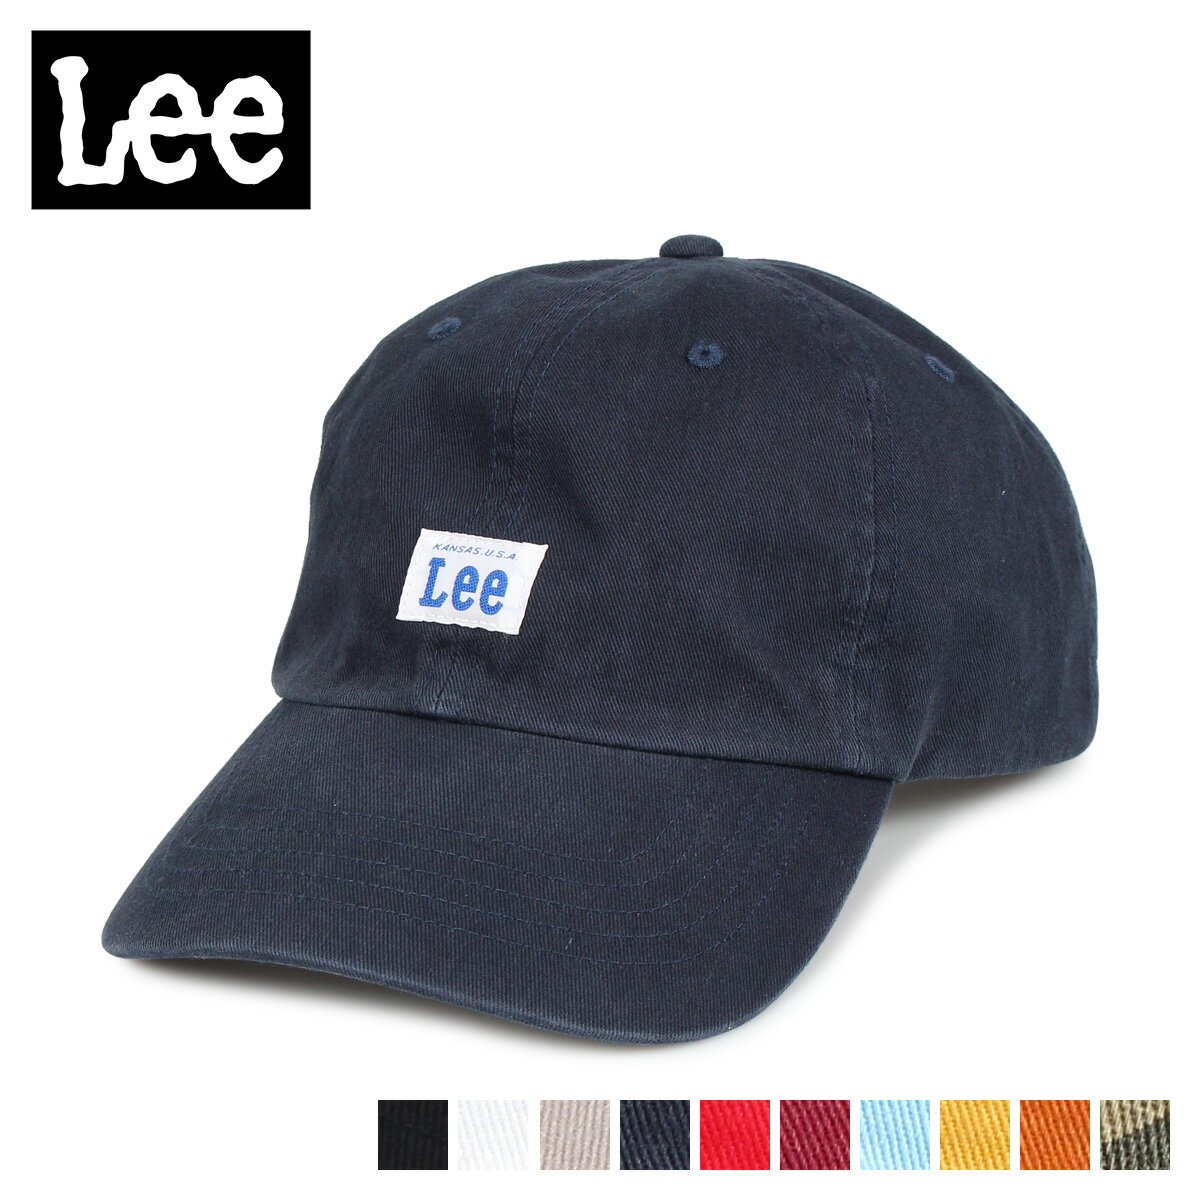 Lee GS TWILL LOW CAP リー キャップ 帽子 ローキャップ メンズ レディース ブラック ホワイト グレー ネイビー レッド ダークレッド ブルー イエロー オレンジ カモ 黒 白 100-176303